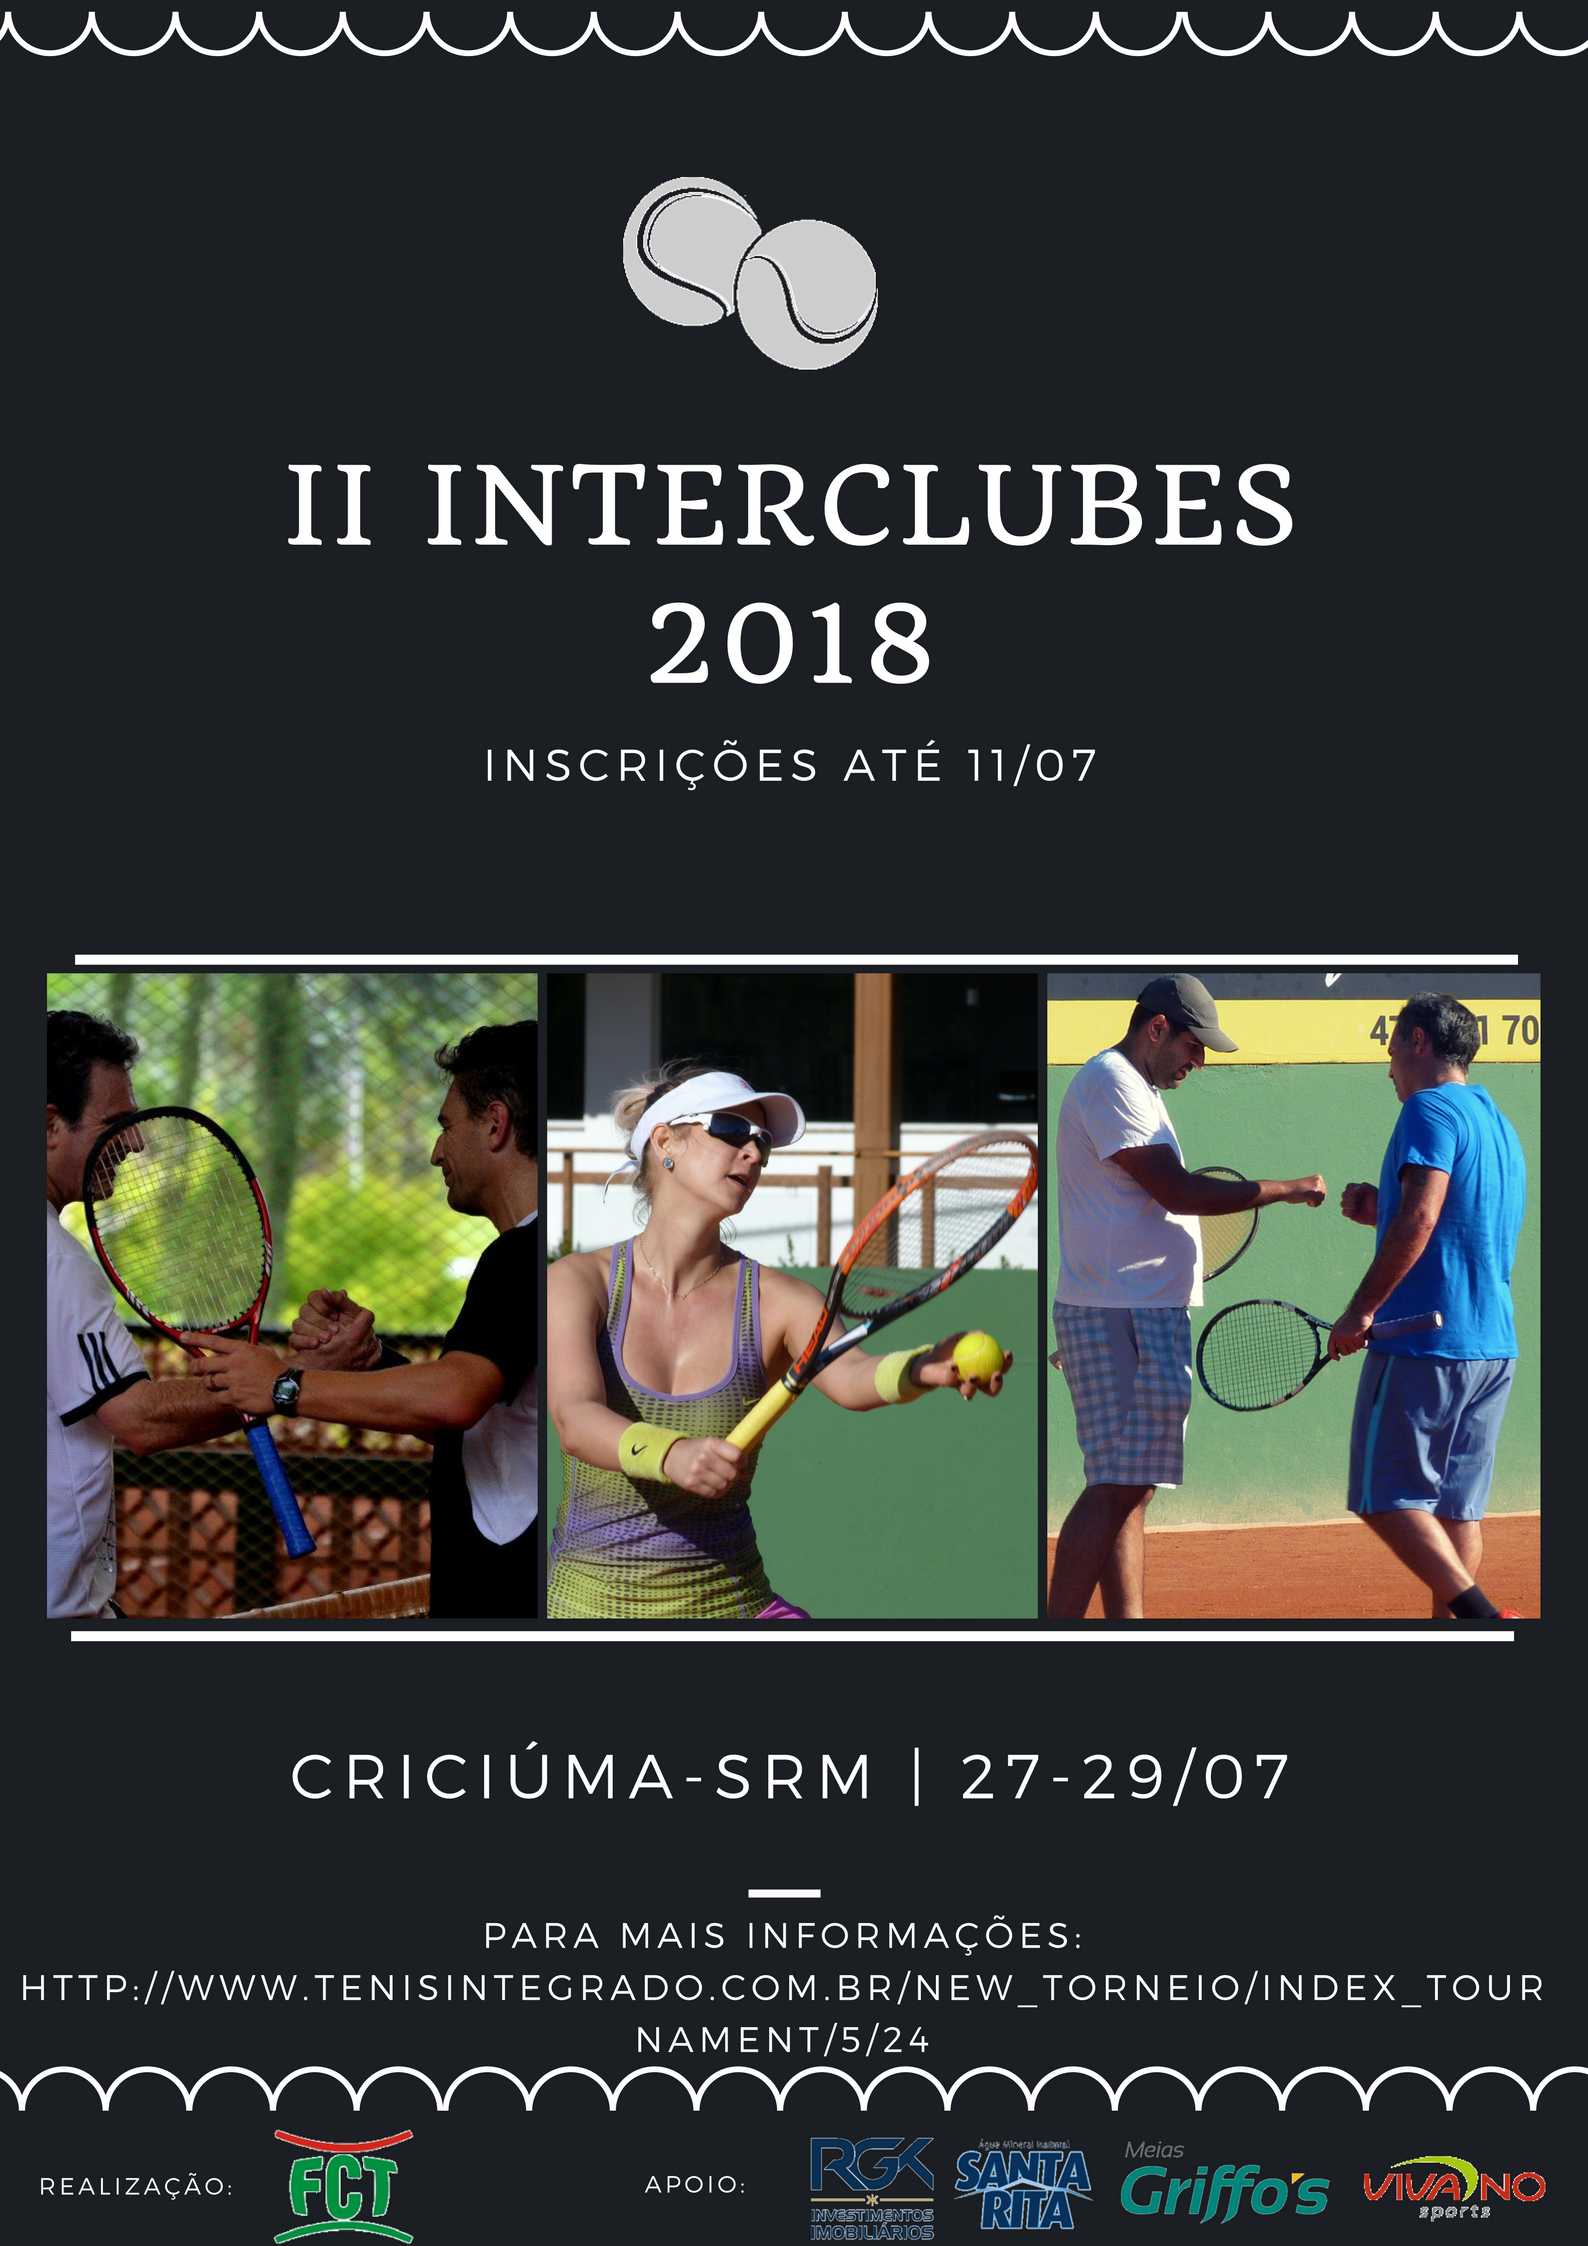 INSCRIÇÕES ABERTAS PARA O II INTERCLUBES DE TÊNIS 2018